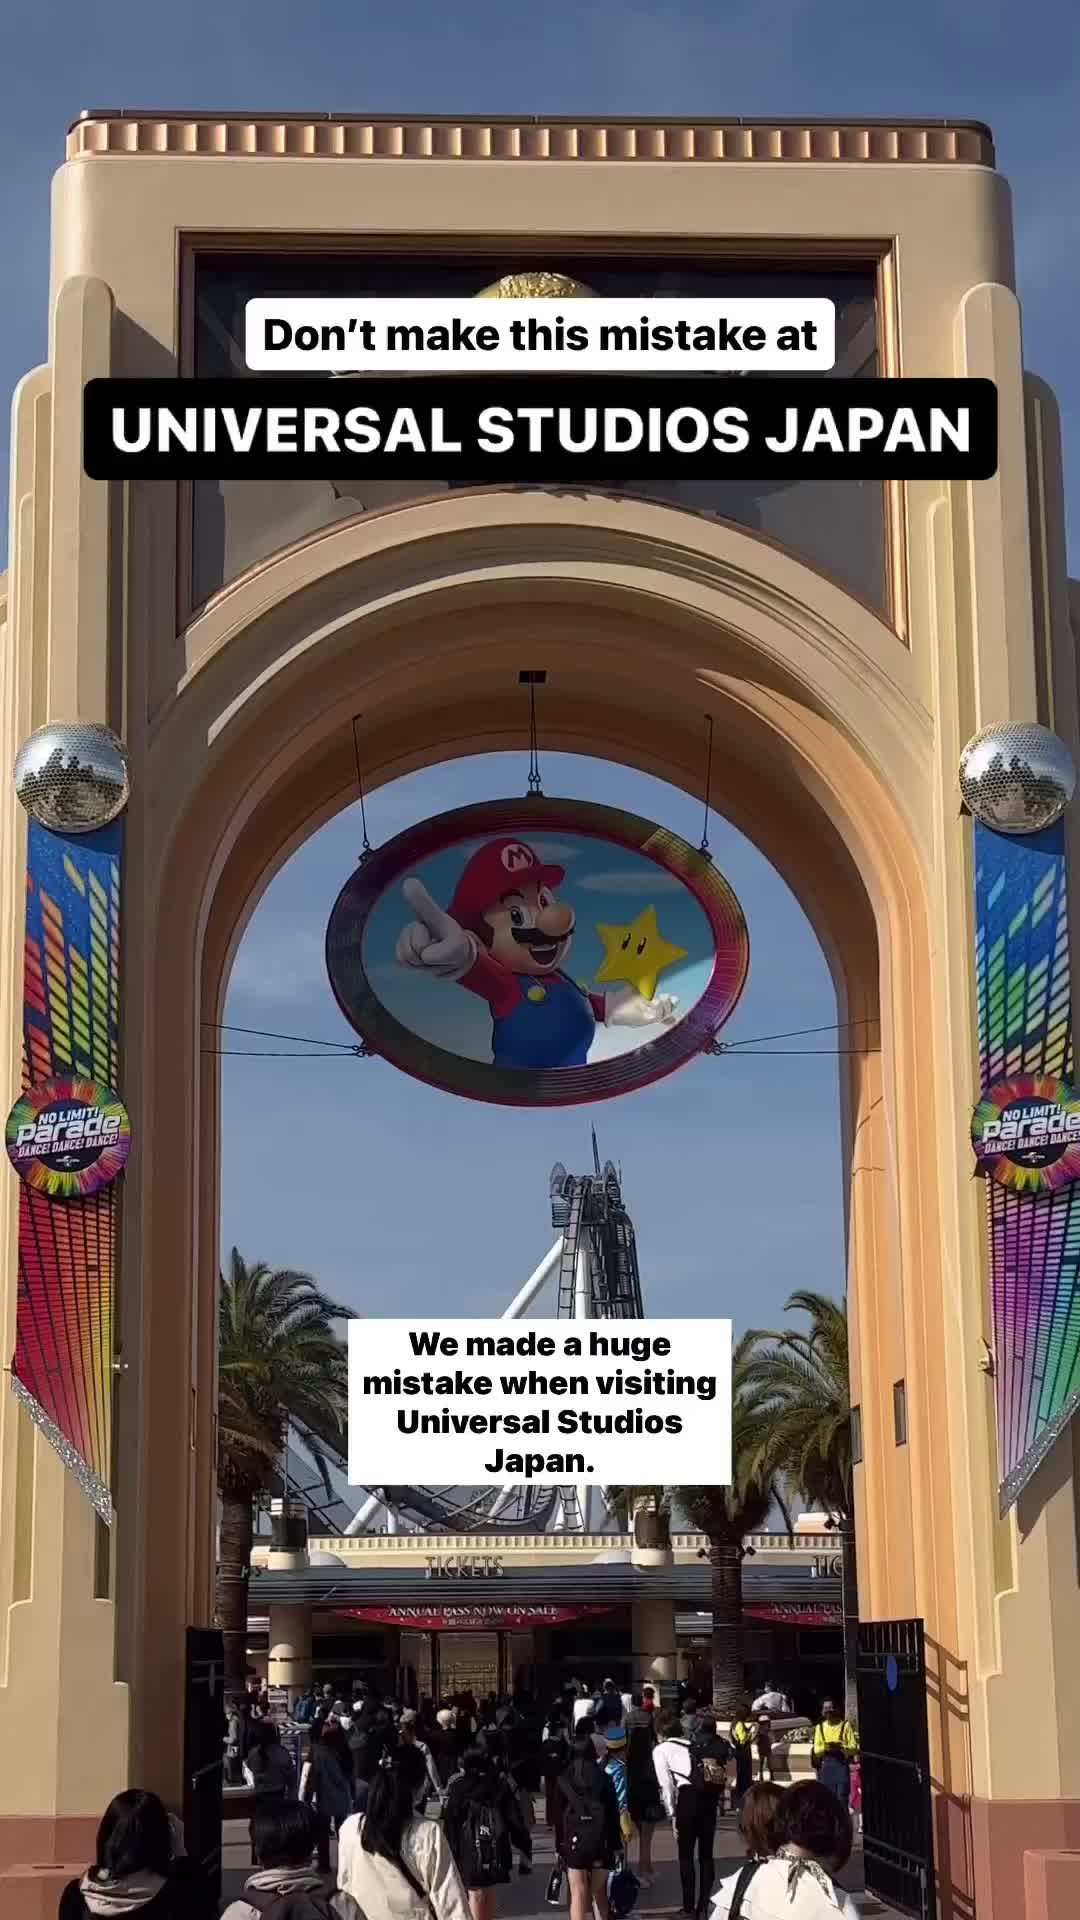 Maximize Your Fun at Universal Studios Japan with Express Pass